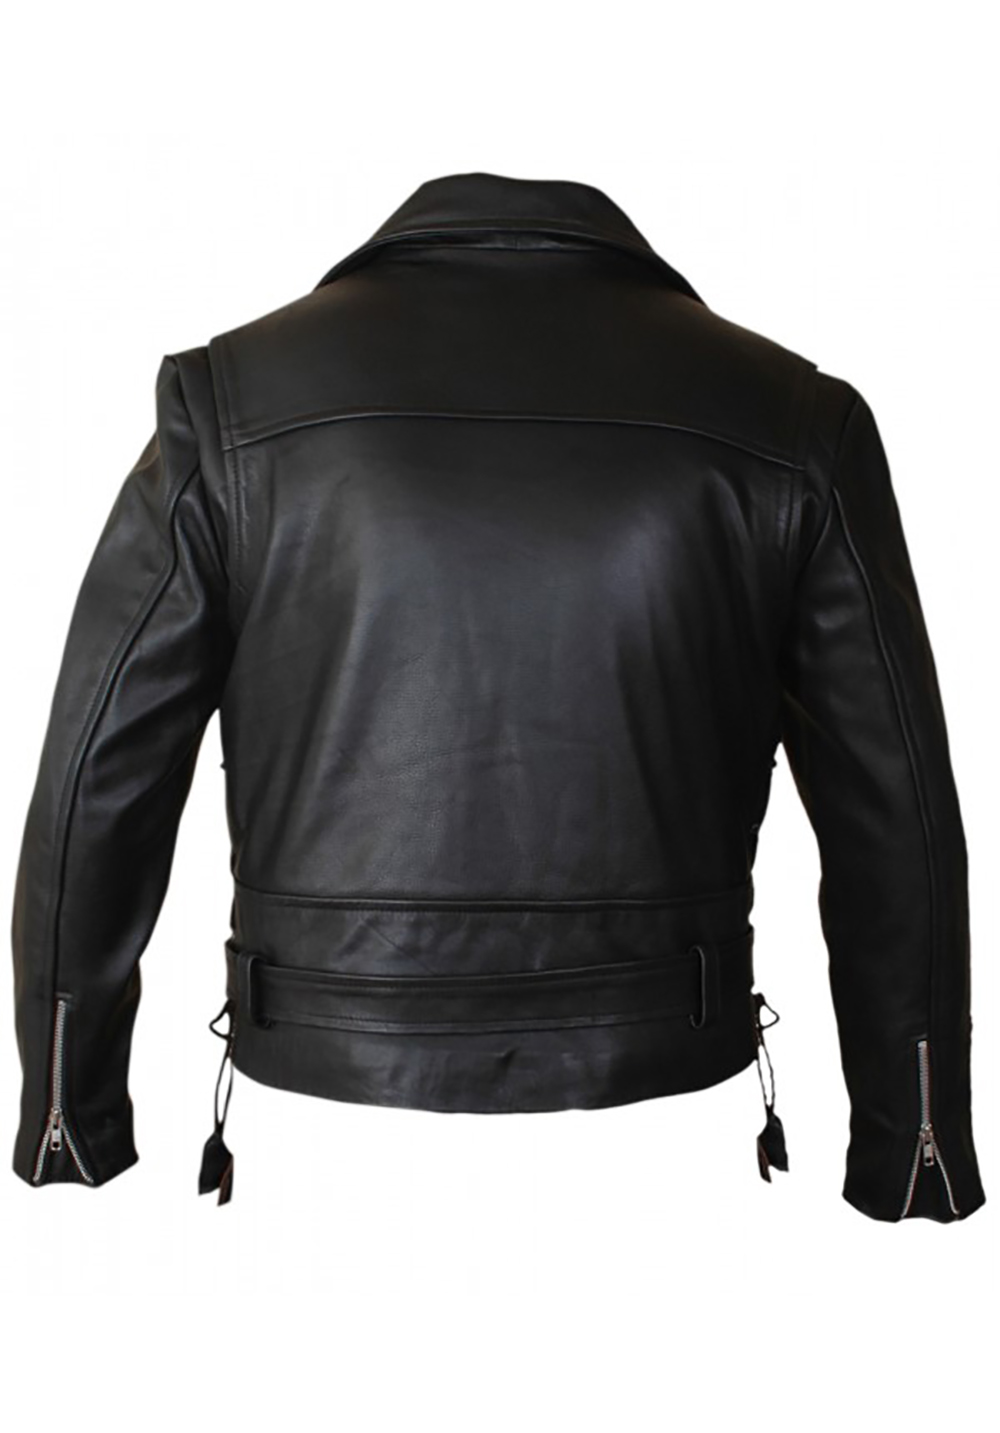 Terminator 2 leather jacket flesh jacket